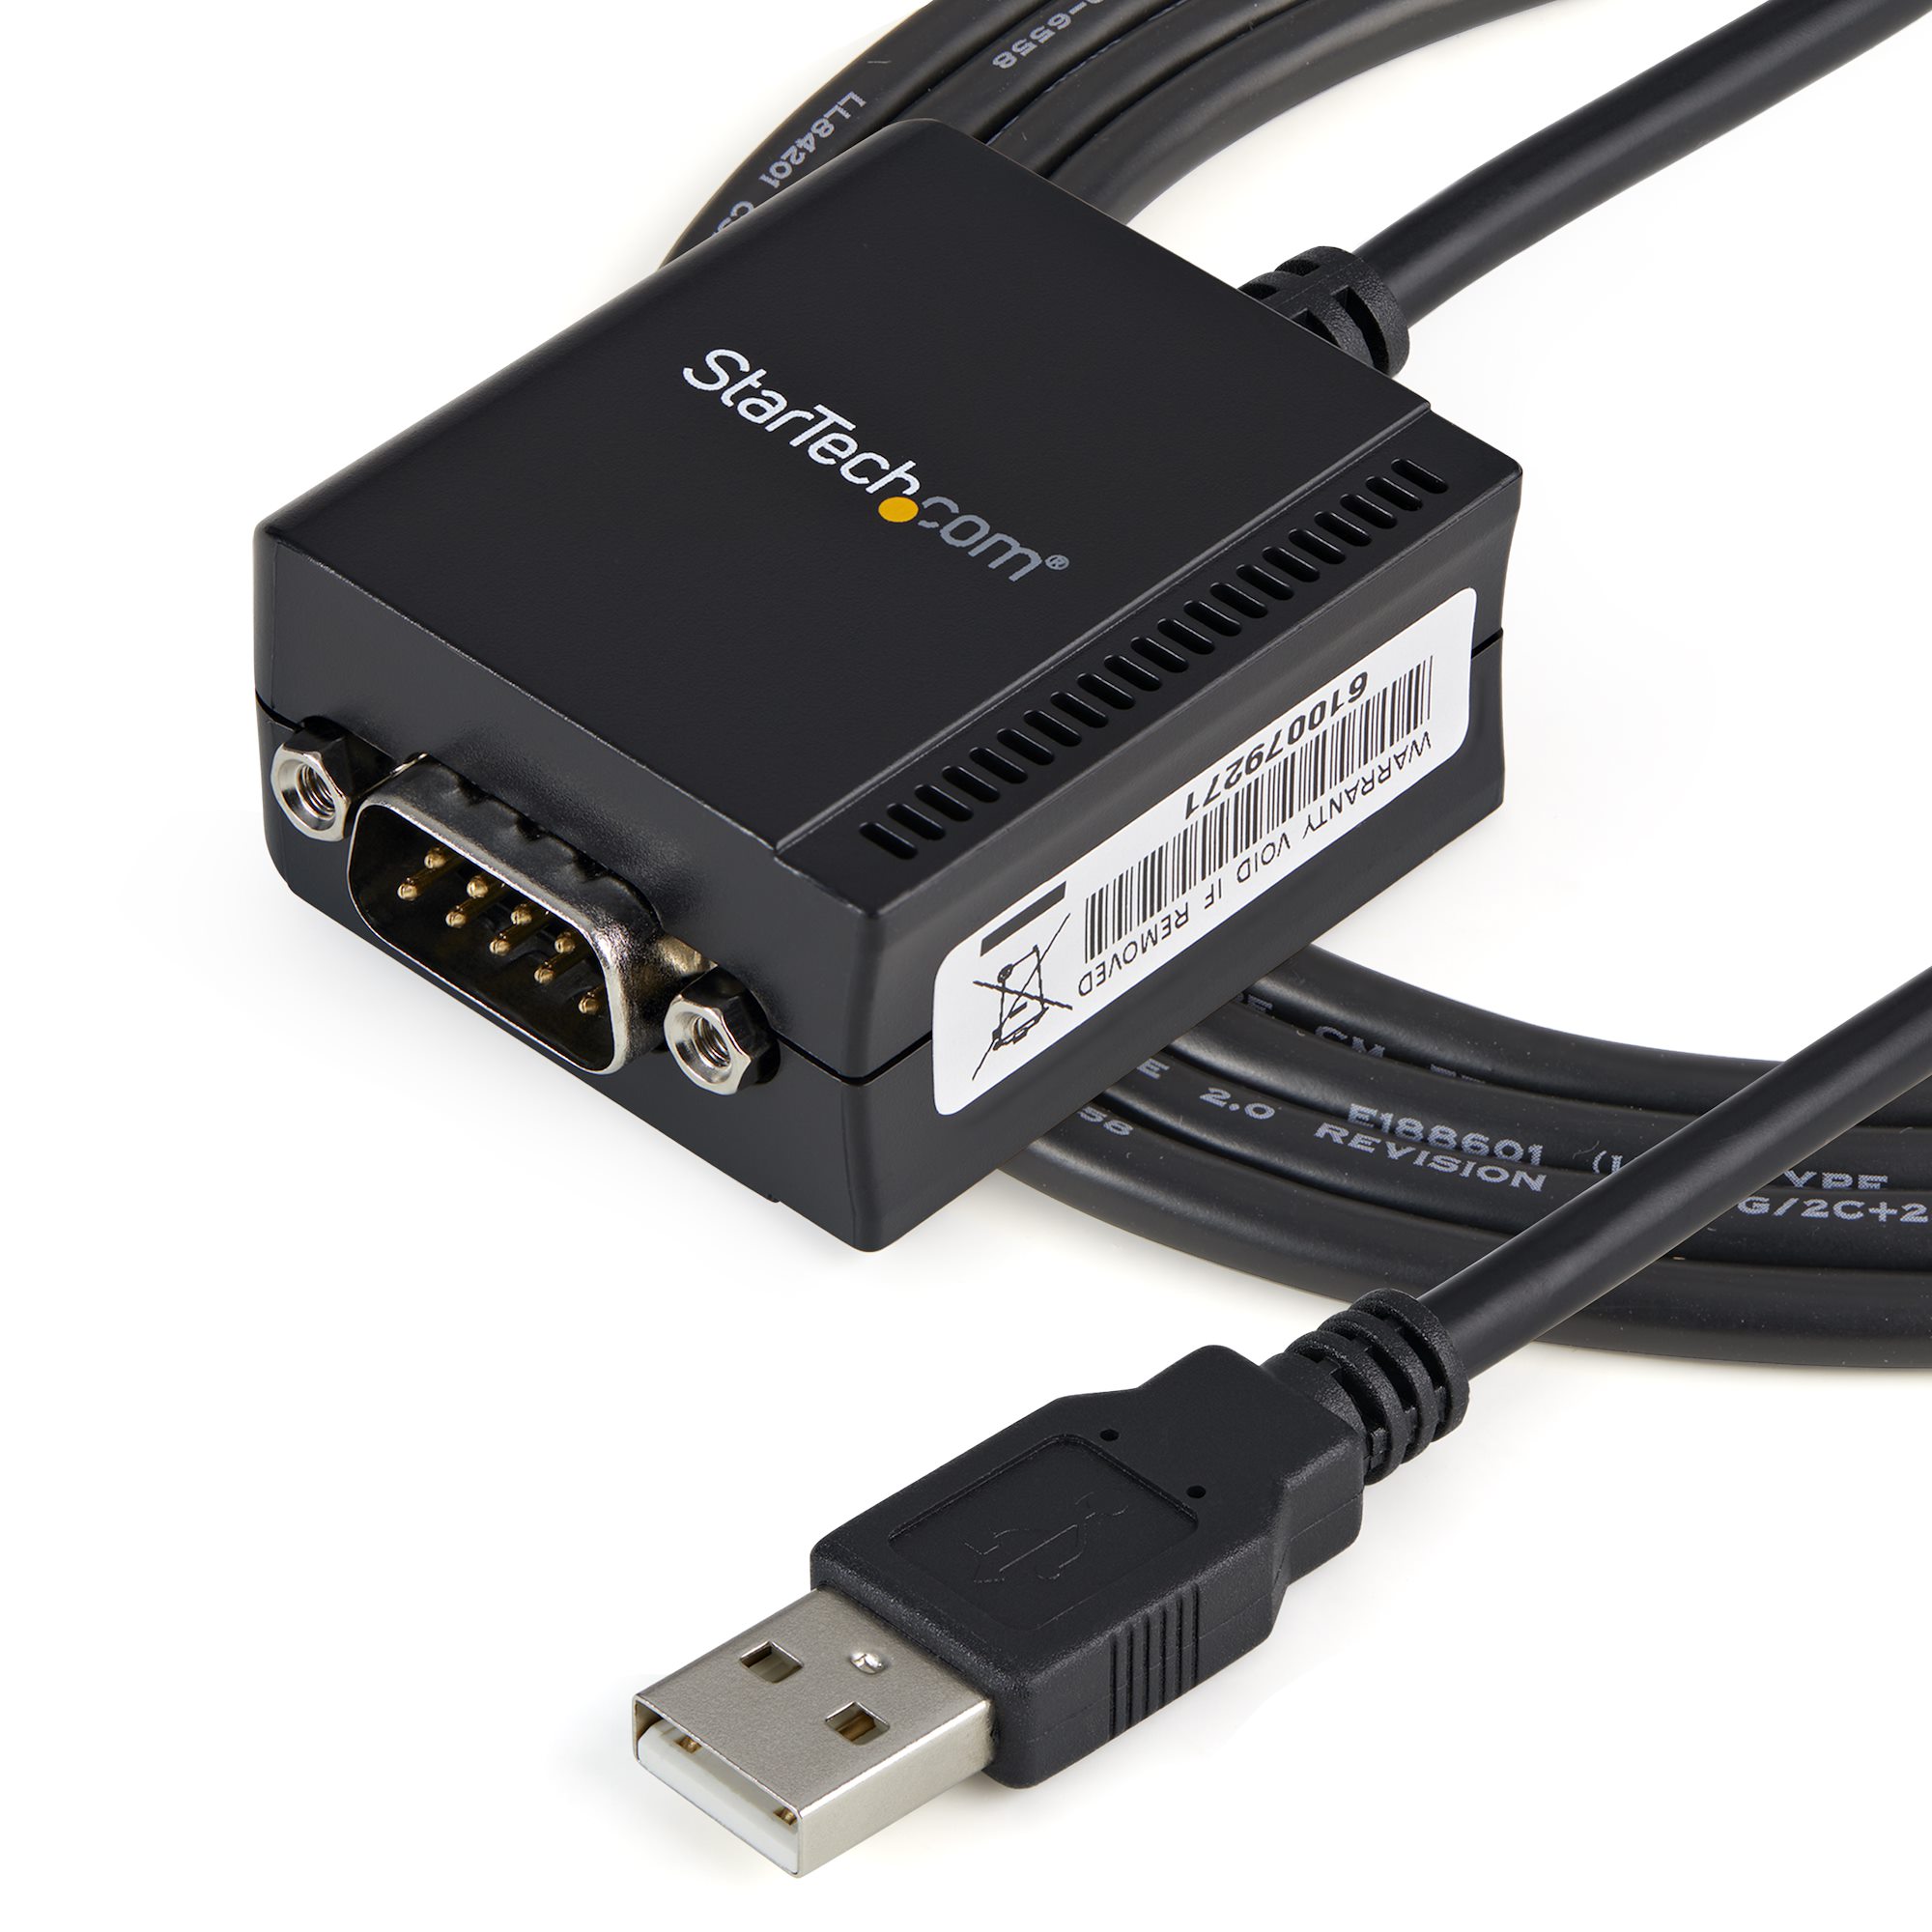 システムサコム工業 USB(COMポート) RS232C 5ポート分配 統合ユニット USB-232C-232TW5-AC-U 通販 